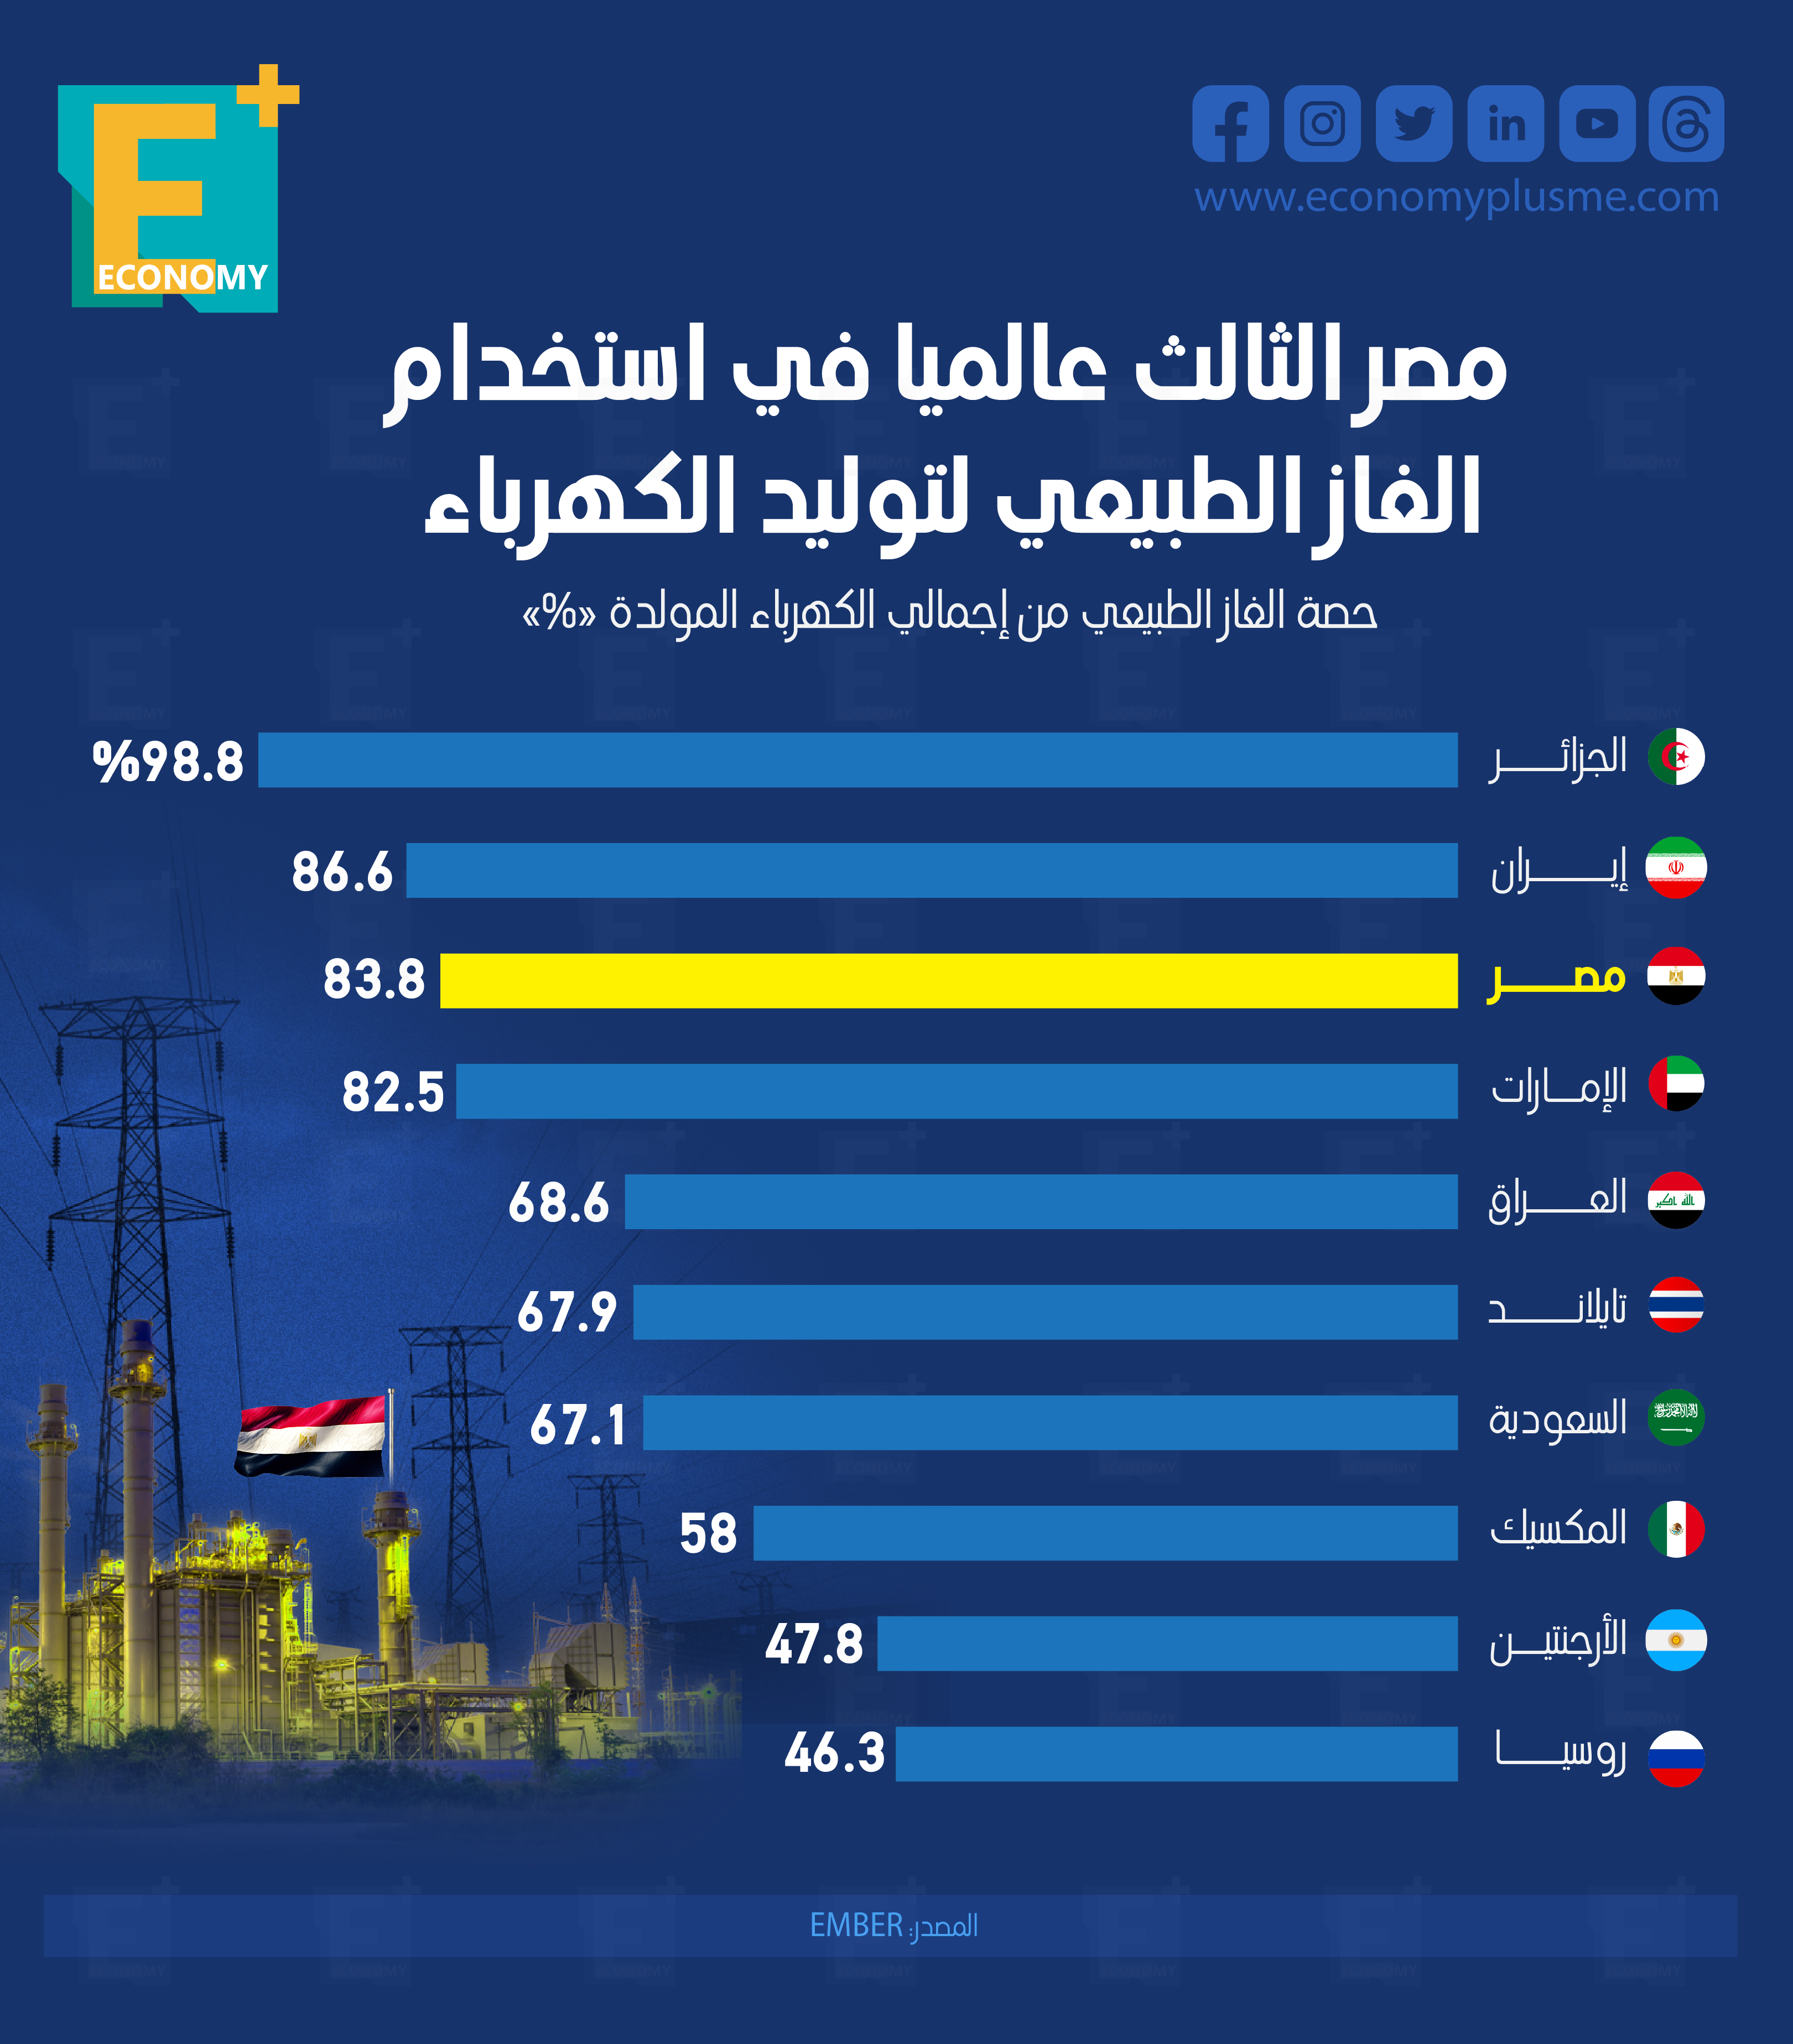 مصر الثالث عالميًا في استخدام الغاز الطبيعي لتوليد الكهرباء